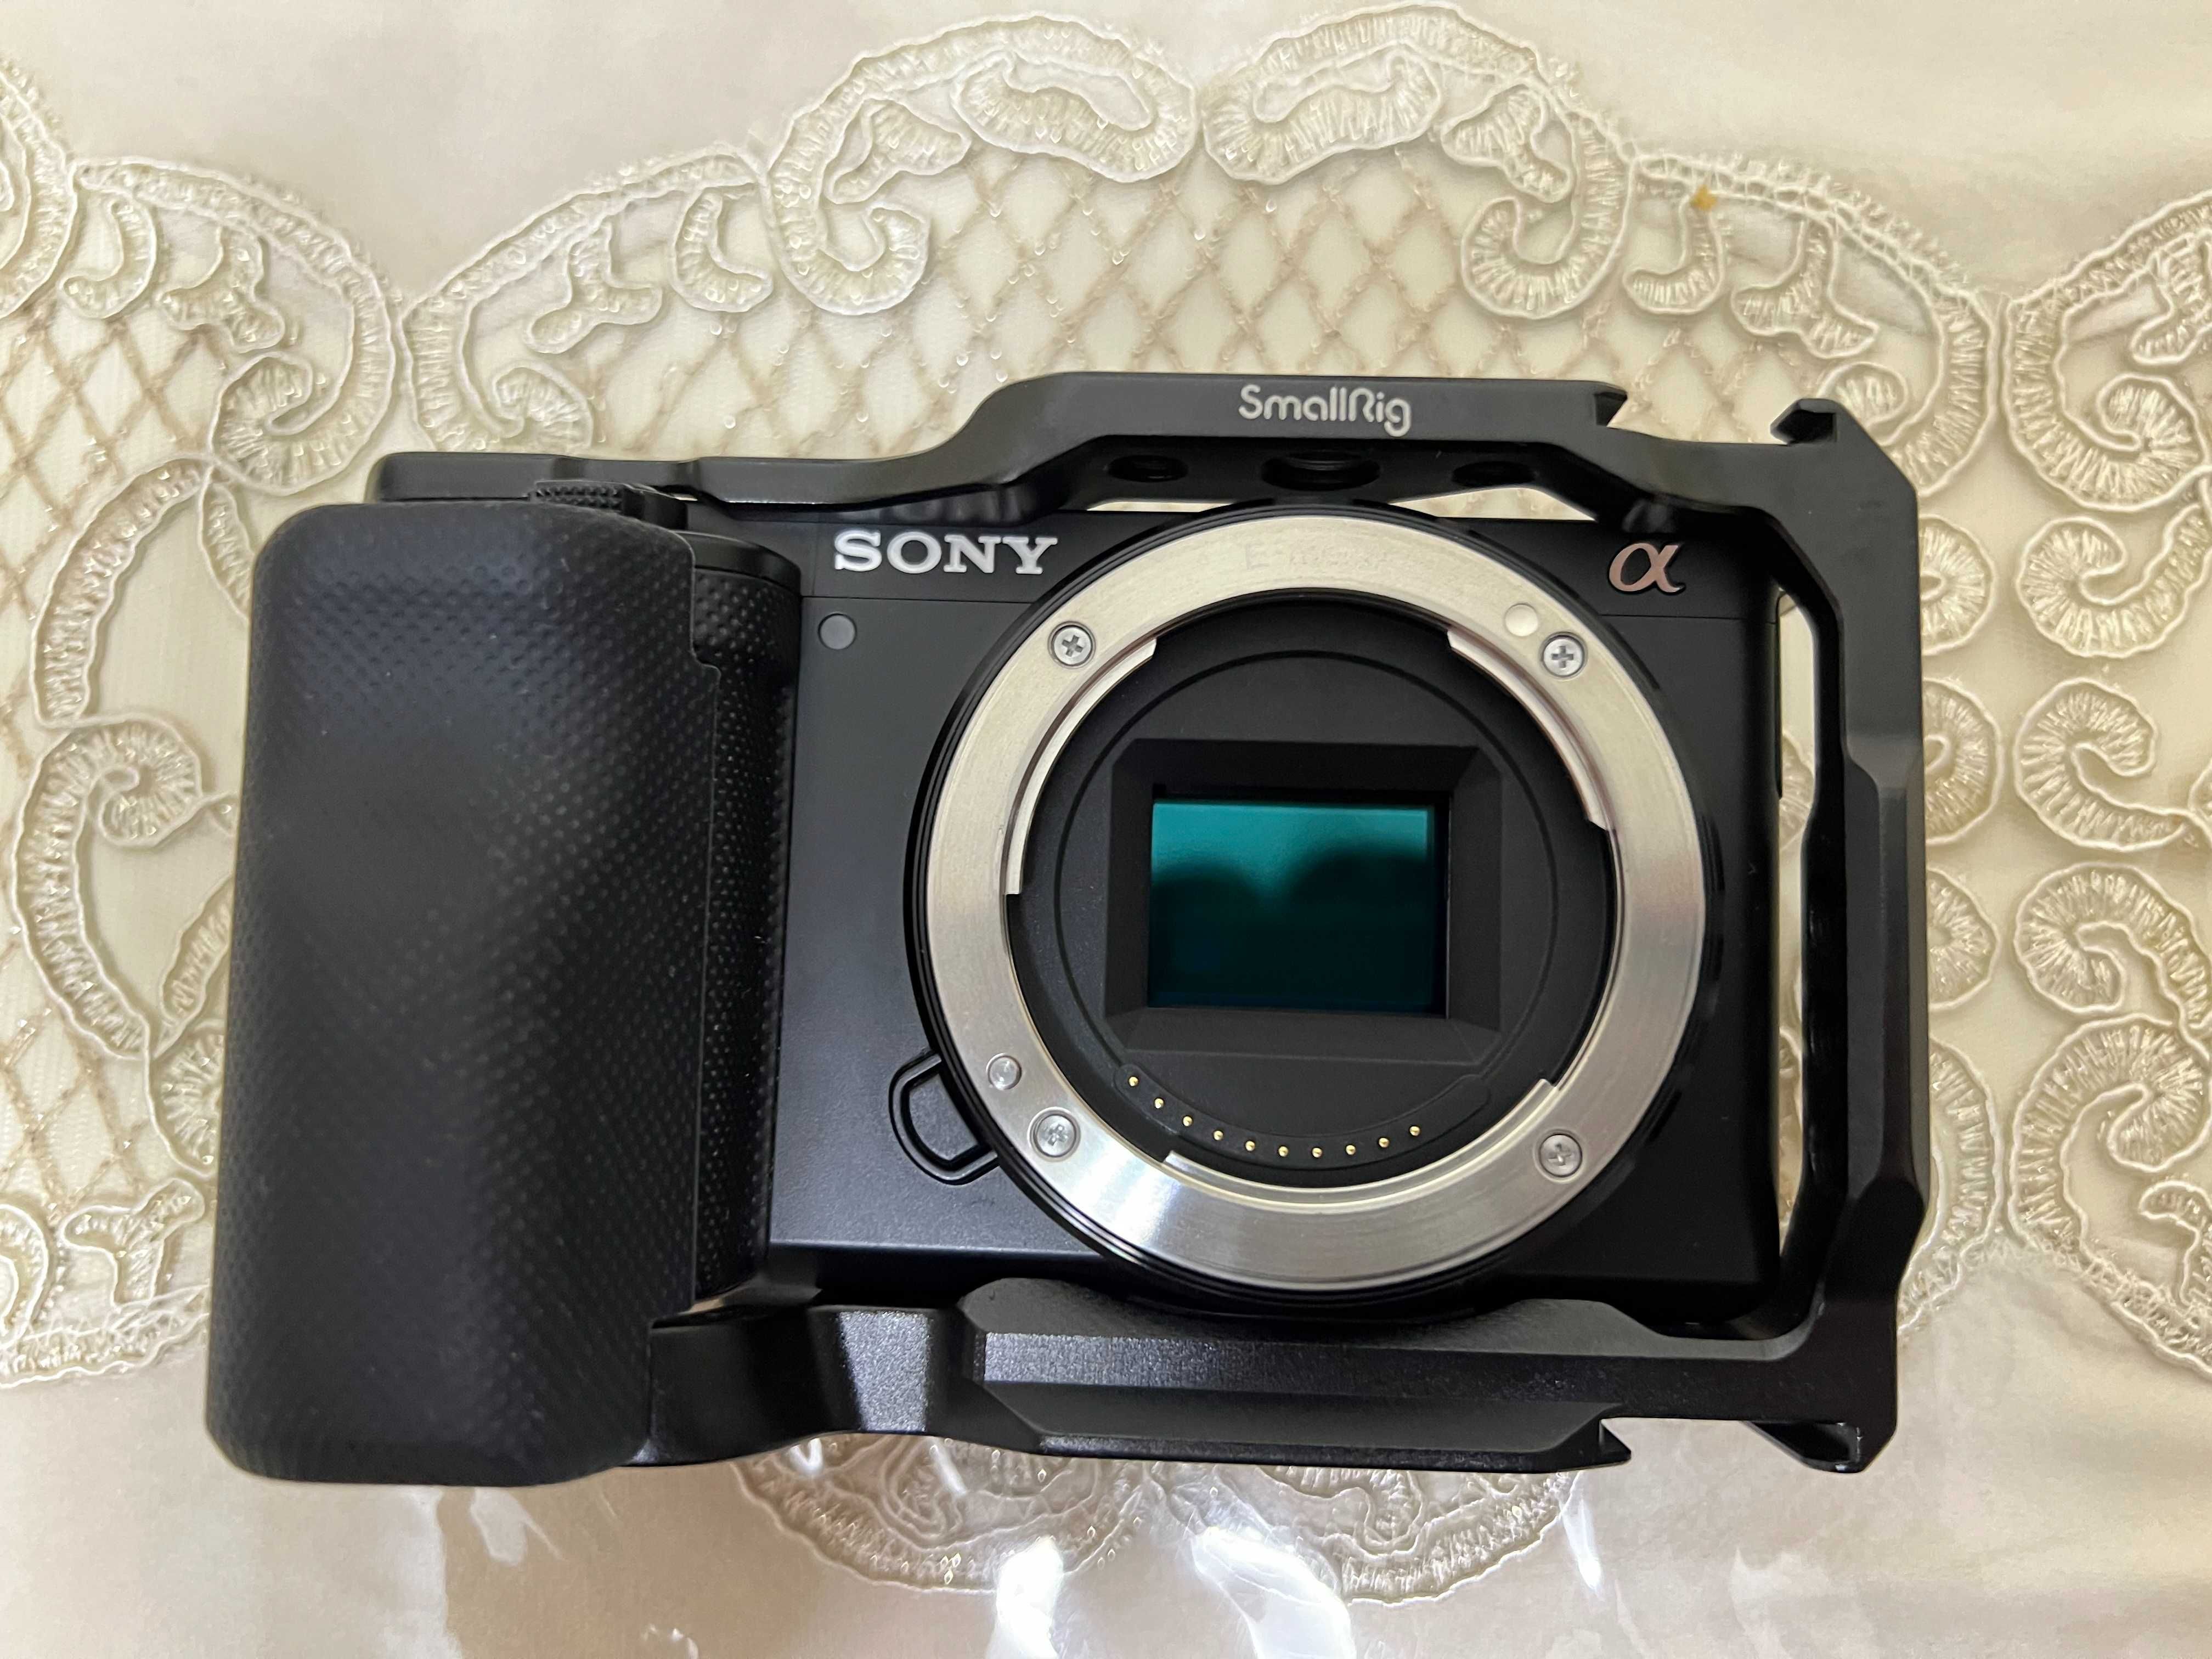 Sony ZV-E10 + Sony 16-50mm f/3.5-5.6 OSS + Smallrig Cage